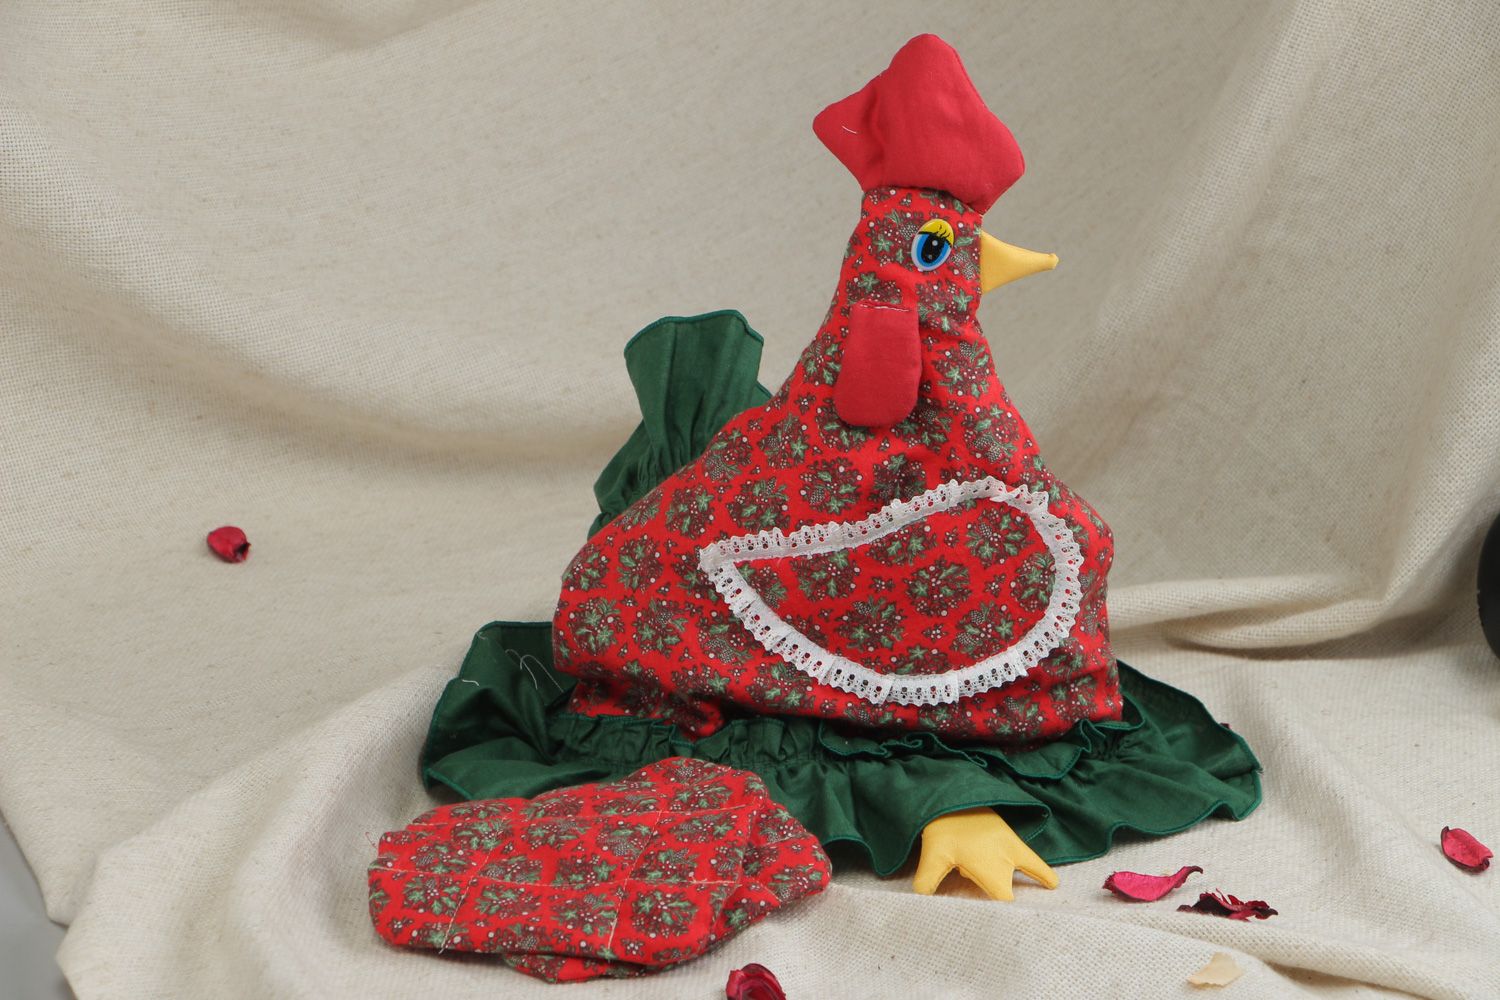 Grand couvre-théière artisanal textile avec maniques fait main en forme de poule photo 5